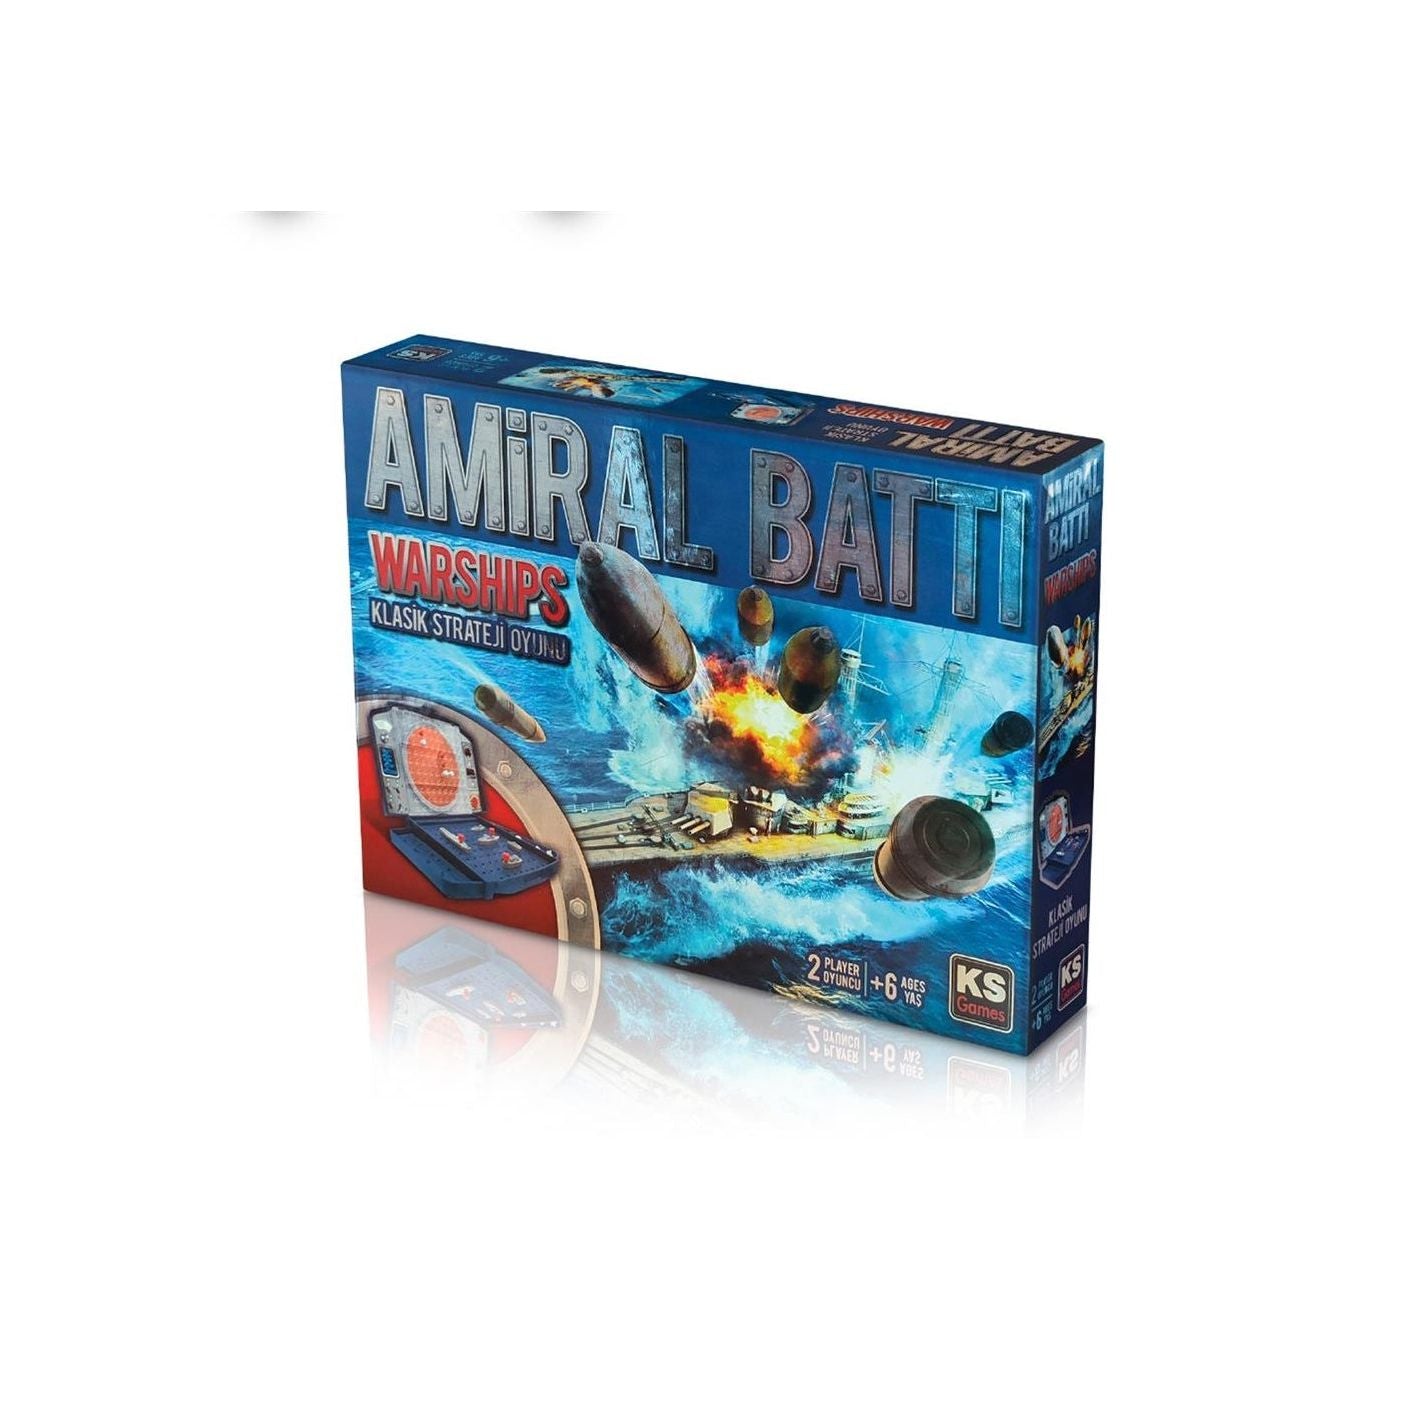 Ks Games Amiral Batti Warships Board Game